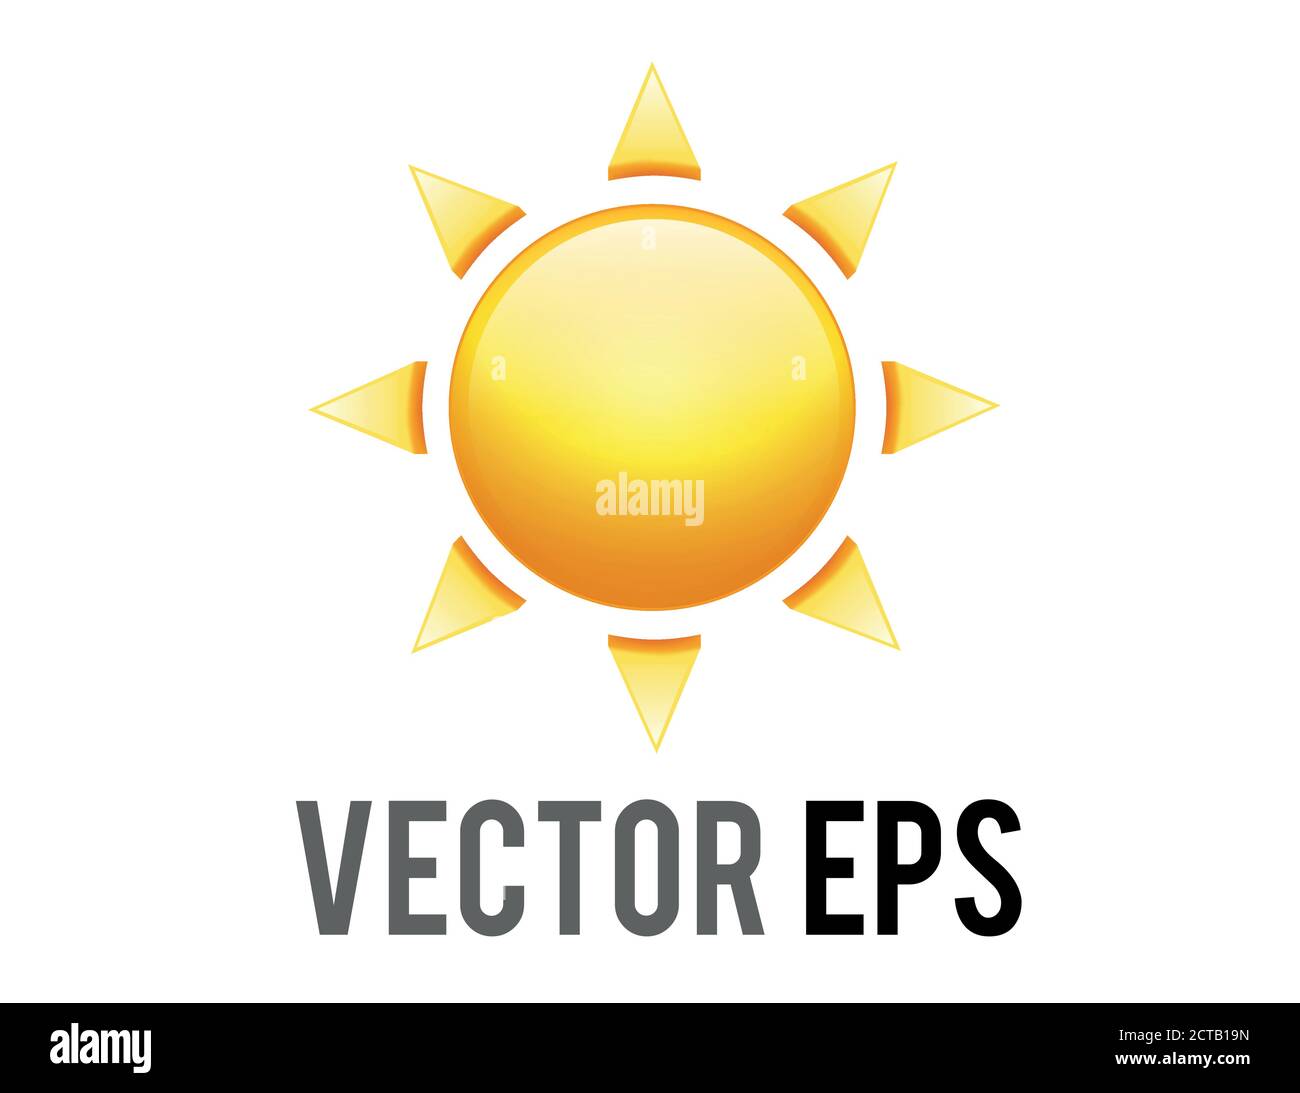 Der Vektor-Gradient glänzt orange Sonne Symbol mit acht dreieckigen Strahlen, repräsentieren sonnig, warm, heißes Wetter, Licht, Wärme, Energie, Leben, Weltraum Stock Vektor